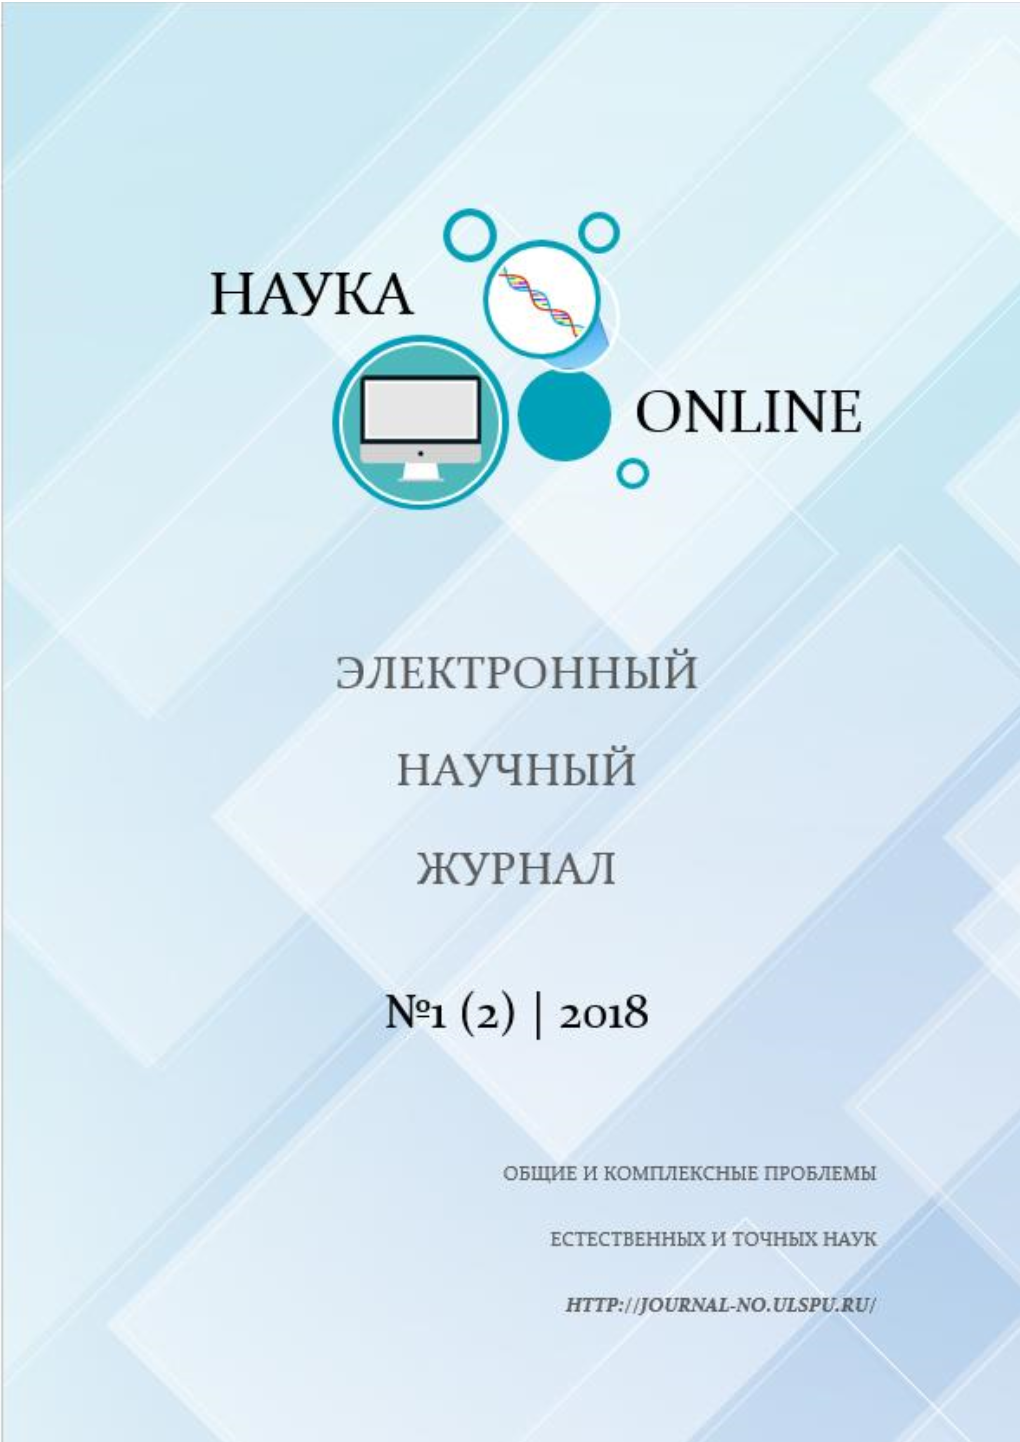 Электронный Научный Журнал «Наука Онлайн». 2018. №1 (2)